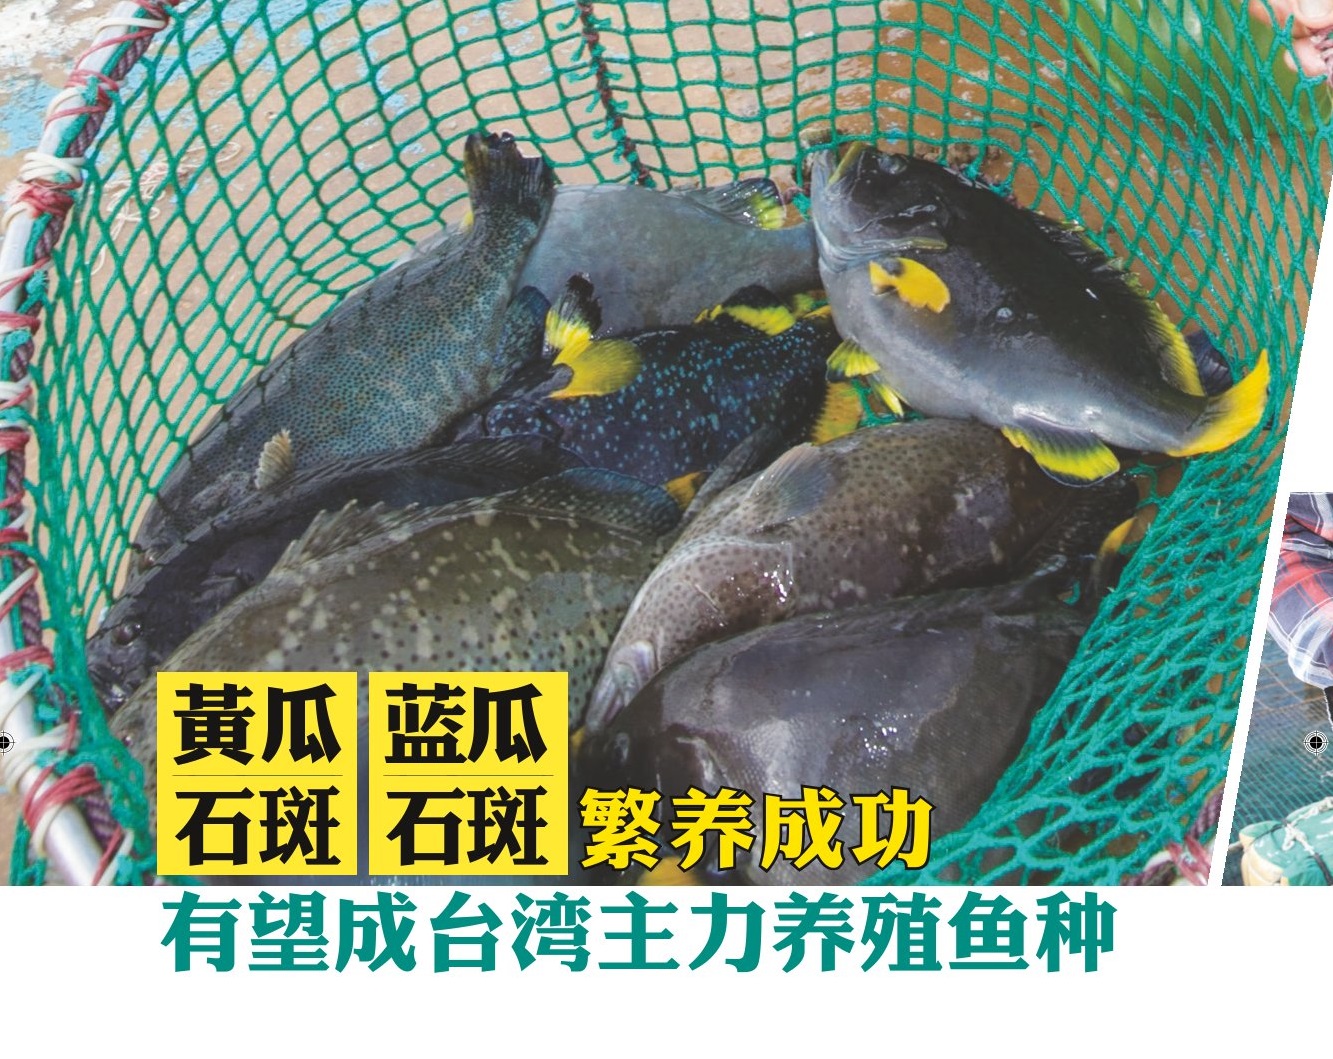 黄瓜, 石斑, 蓝瓜, 石斑繁养成功 有望成台湾主力养殖鱼种 - 农牧世界